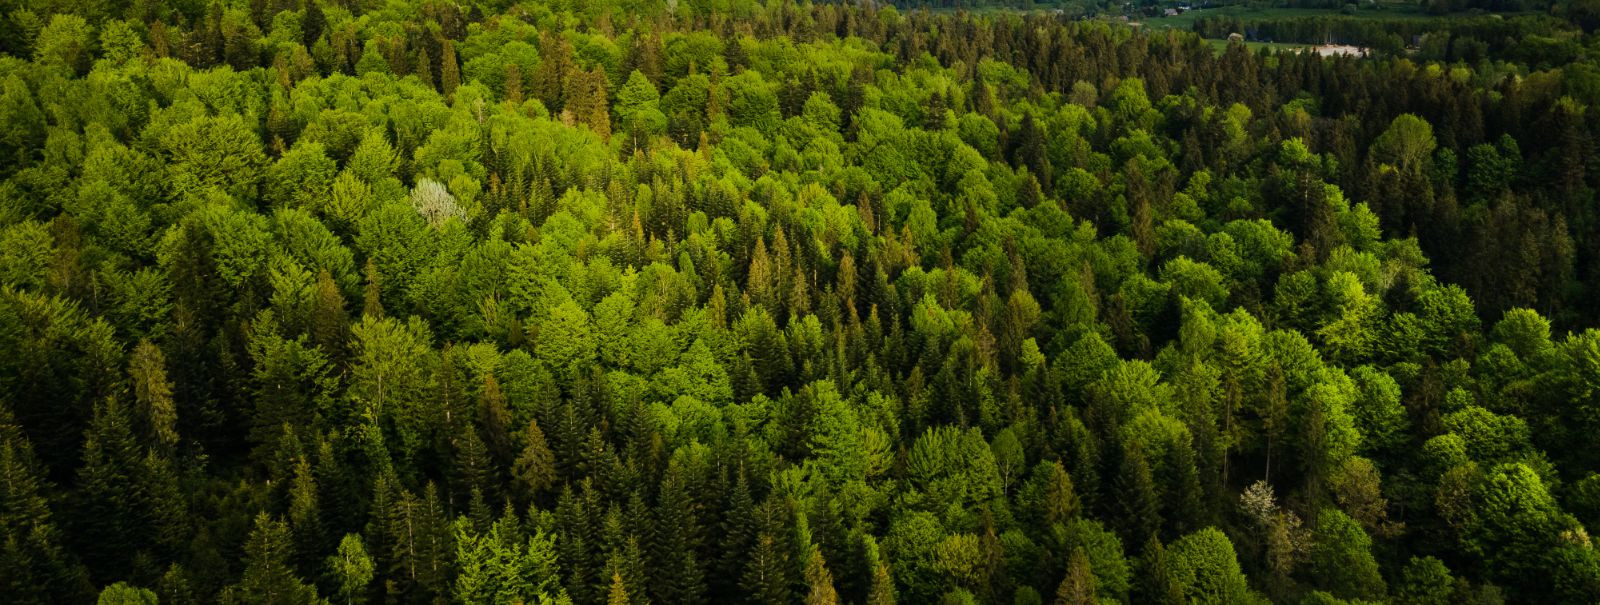 Jätkusuutlik metsandus on majandamisfilosoofia, mis tasakaalustab ...